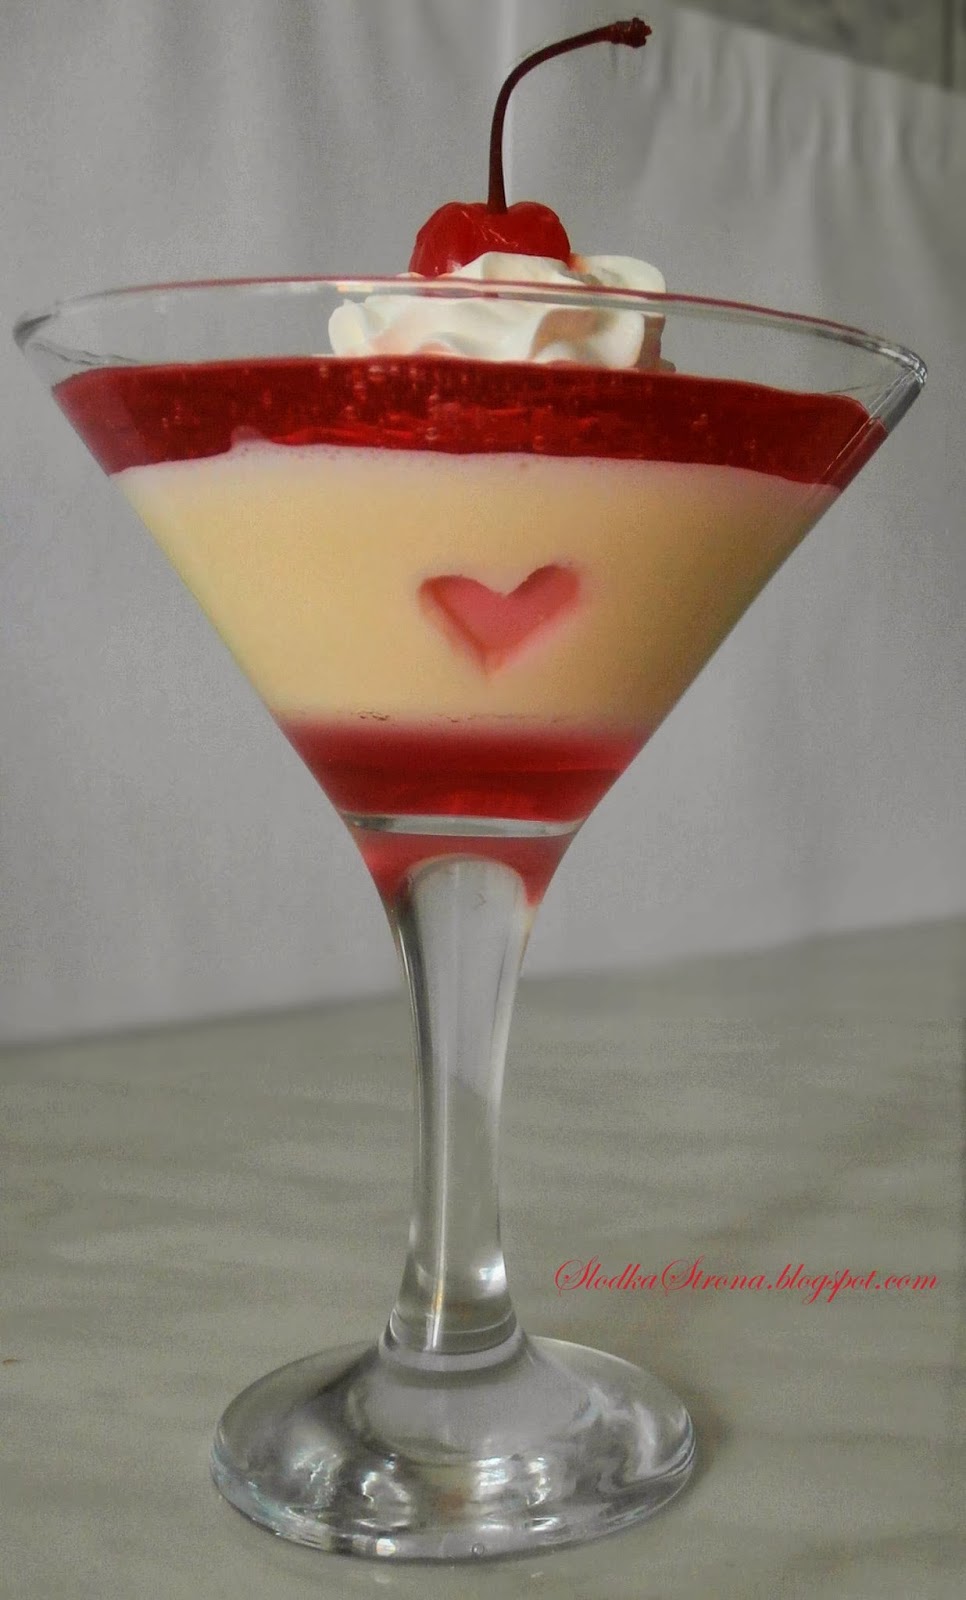 Deser z Mlekiem Skondensowanym na Walentynki - Przepis - Słodka Strona